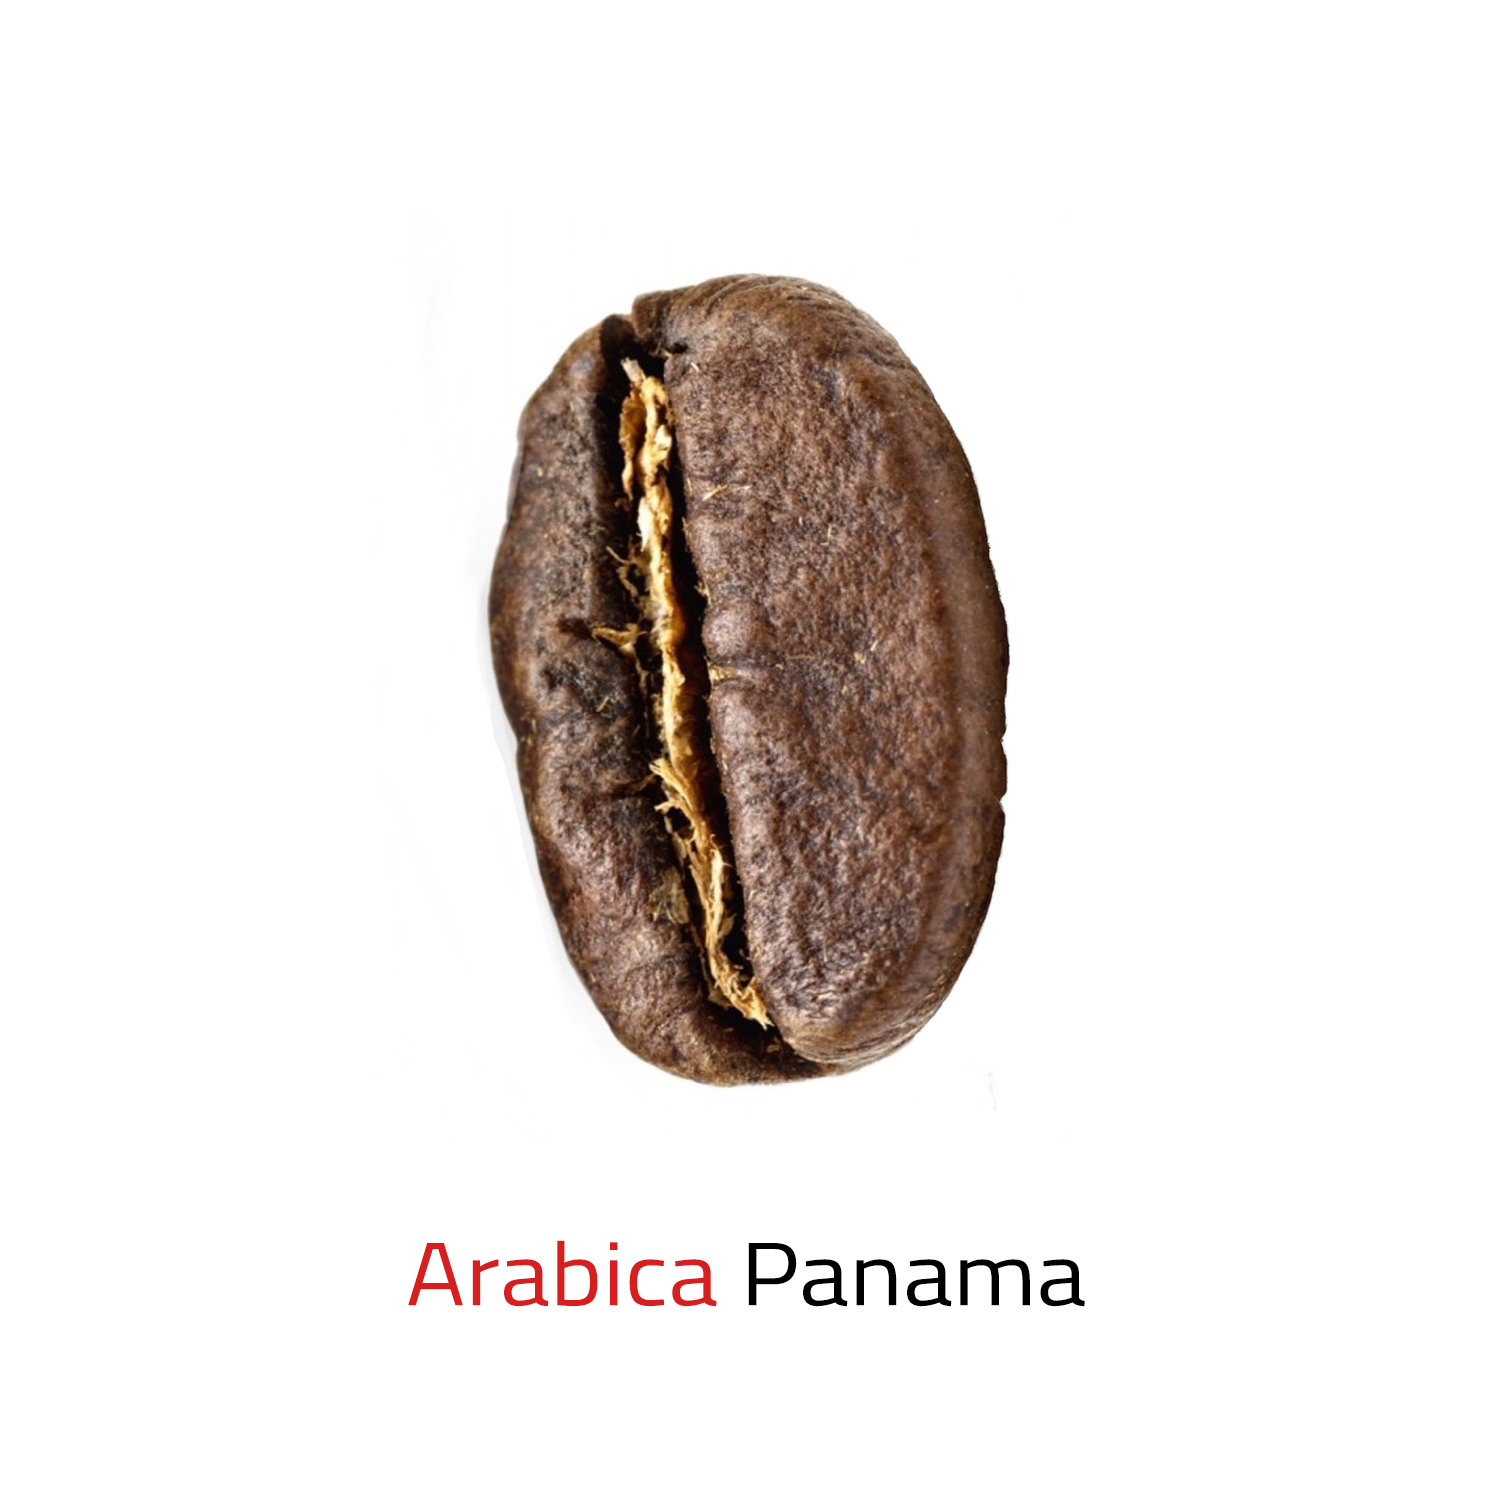 Čerstvě pražená zrnková káva arabica Panama 